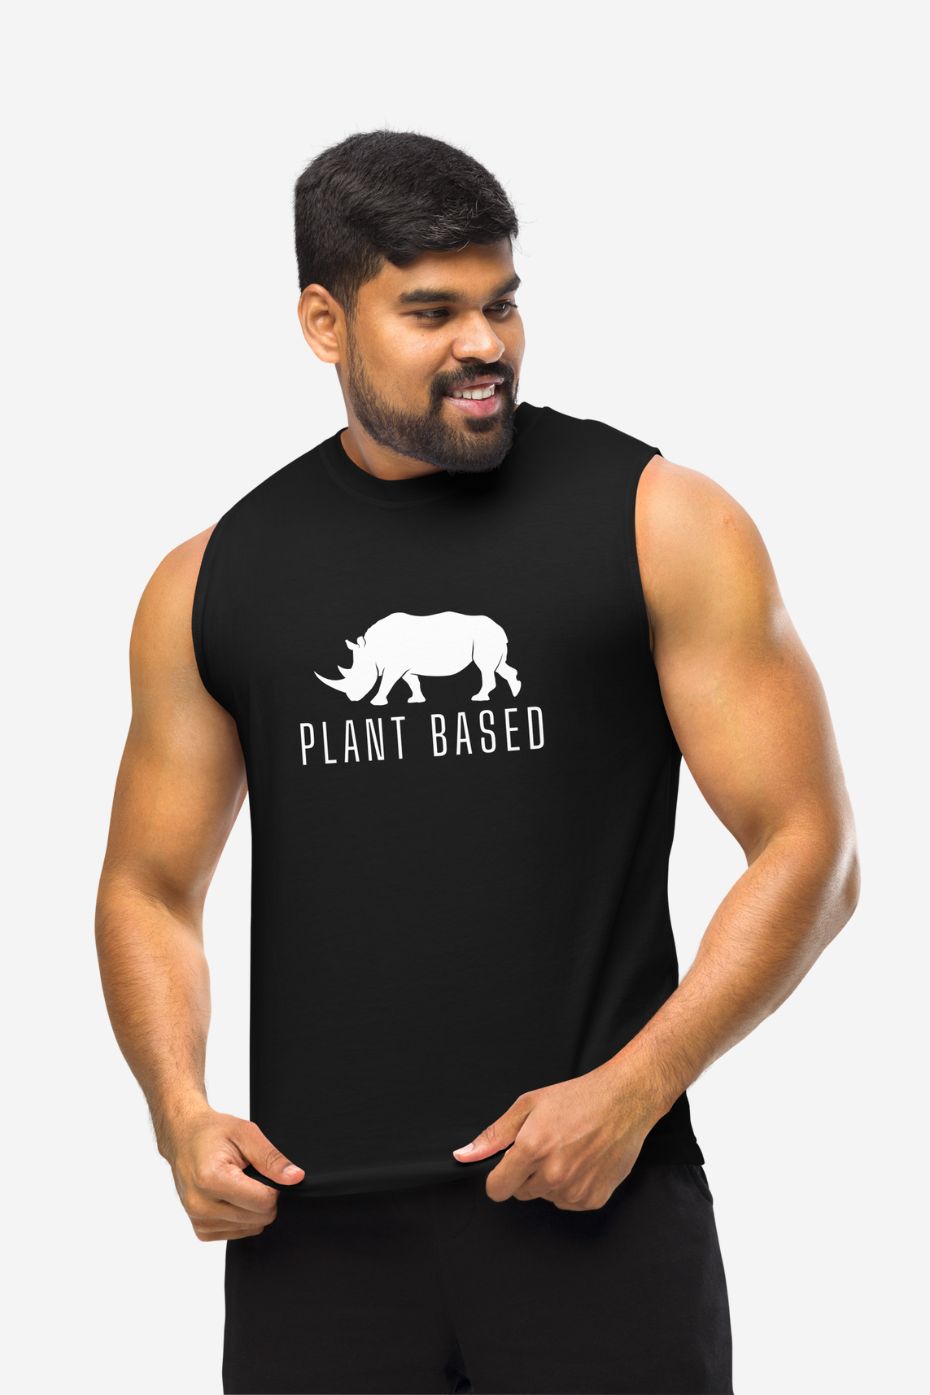 Plant Based - Unisex Muscle Shirt